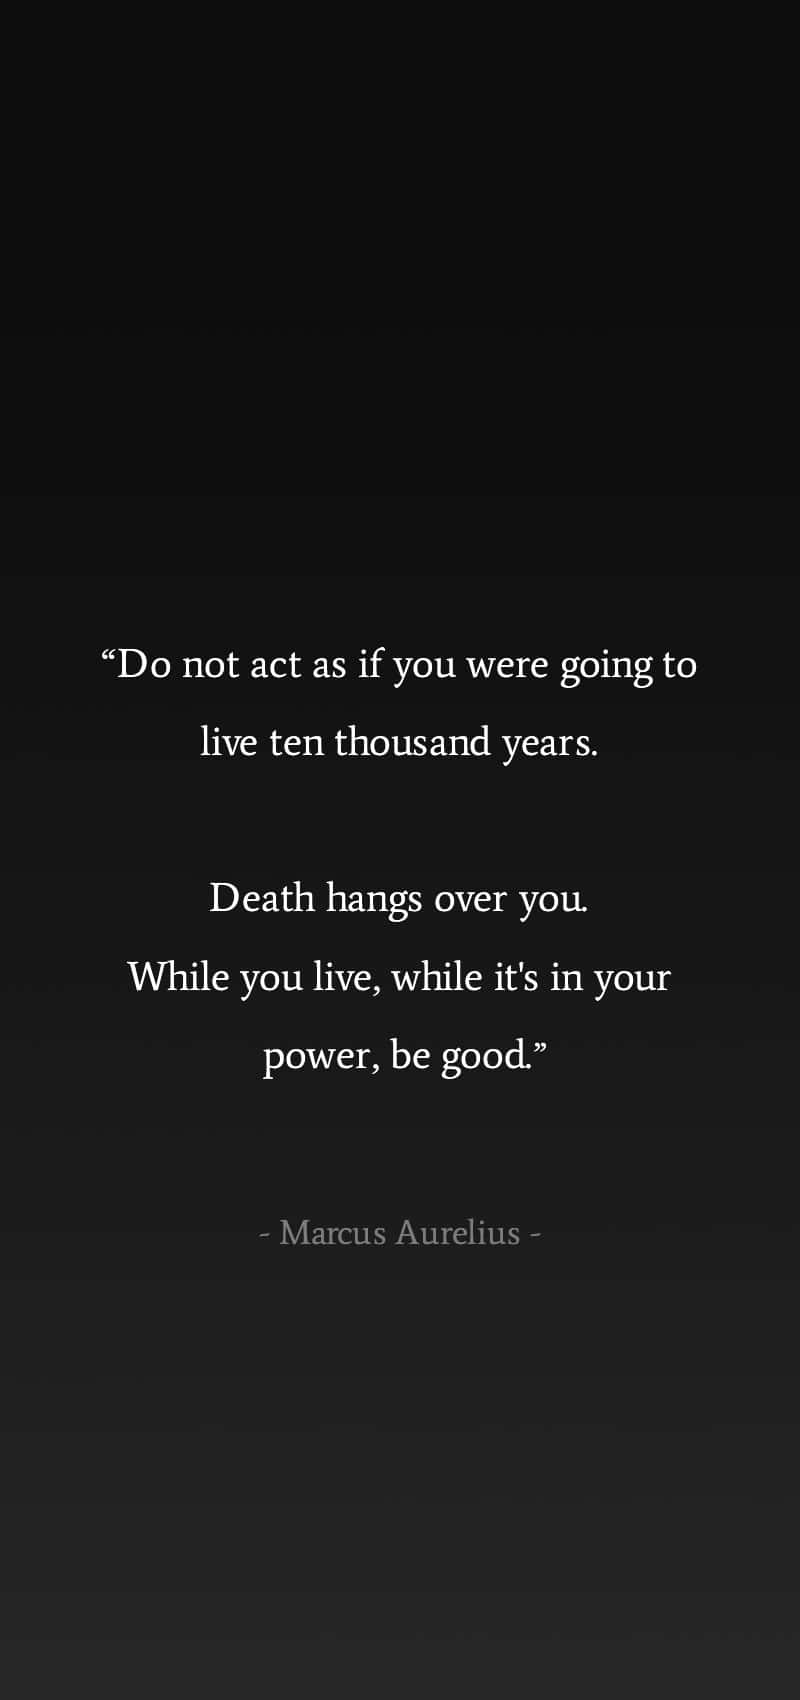 Marcus Aurelius Quoteon Lifeand Death Wallpaper